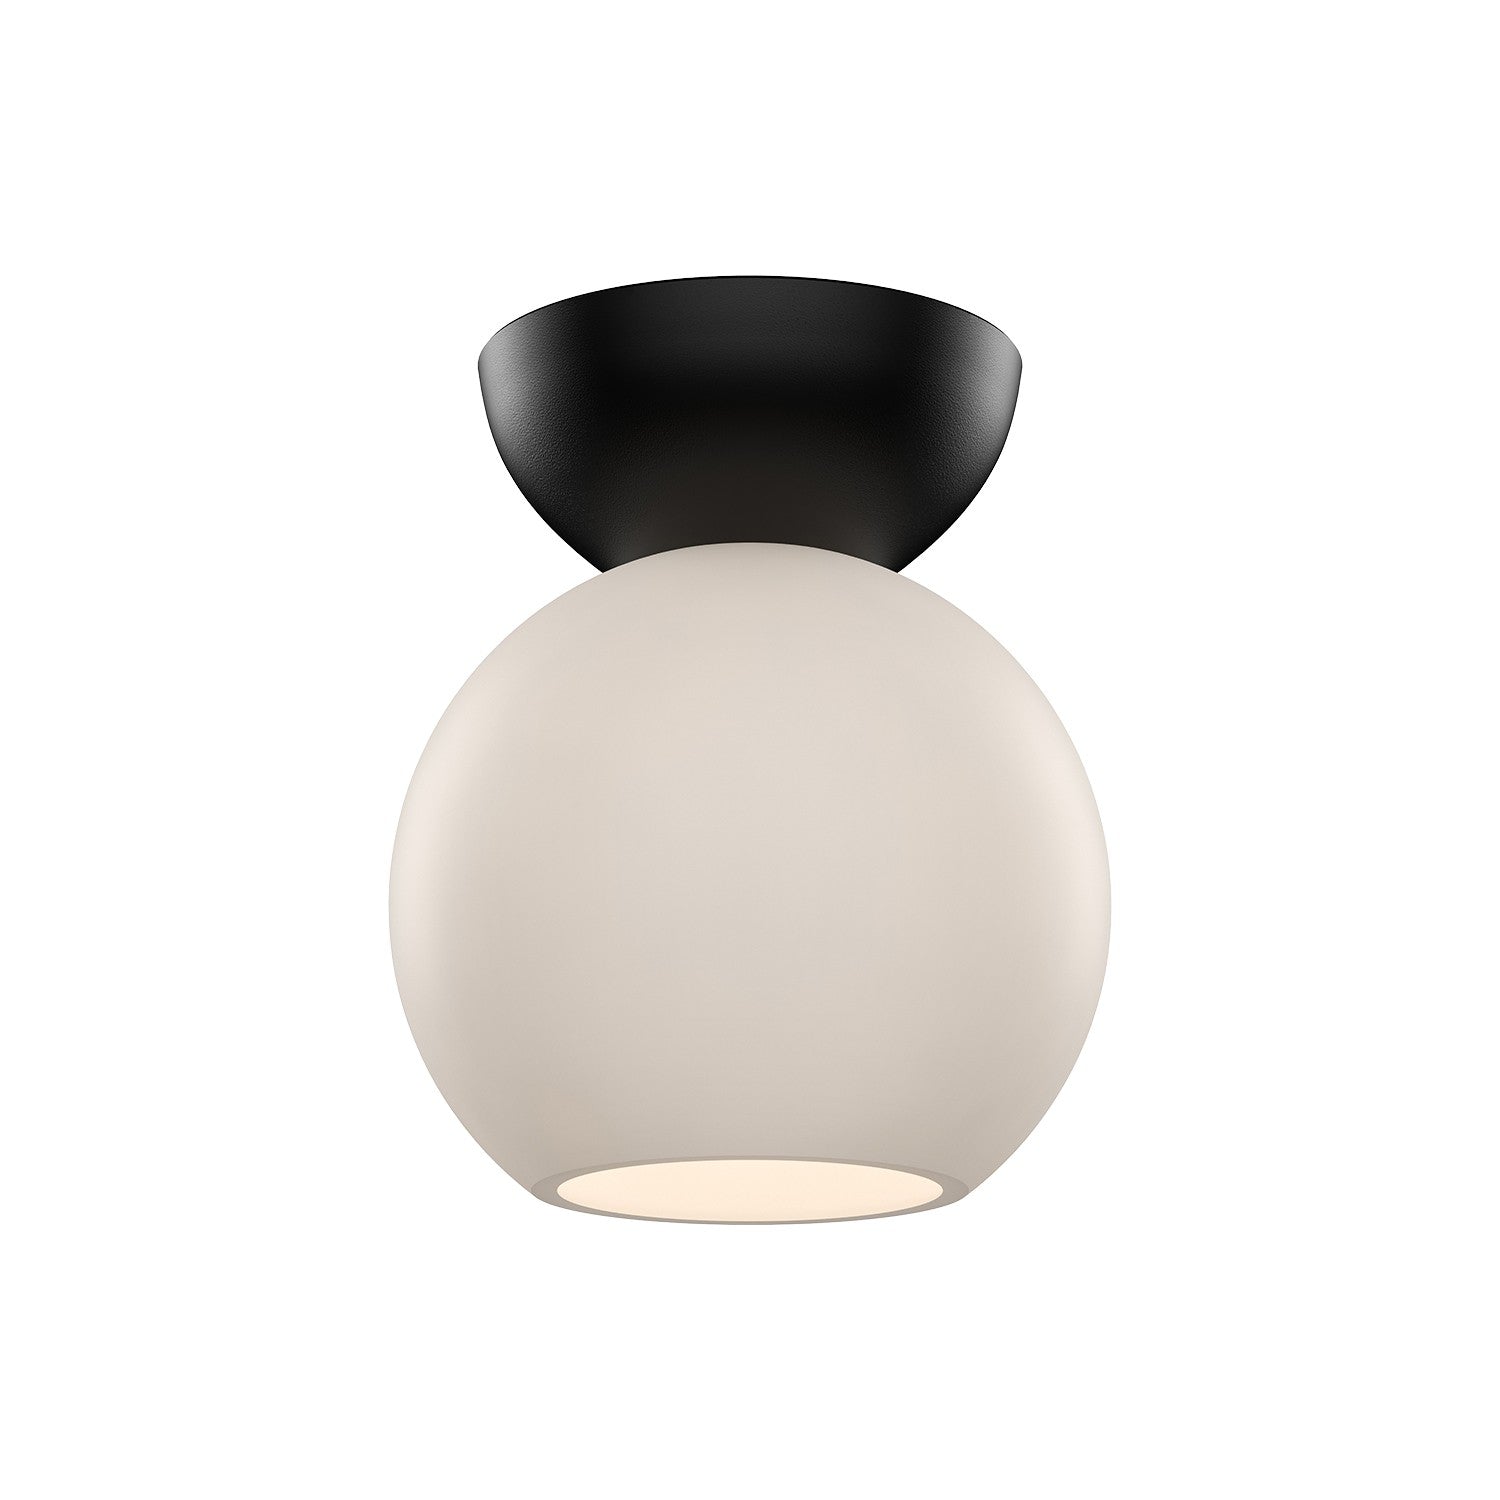 Kuzco Lighting - SF59706-BK/OP - One Light Semi-Flush Mount - Arcadia - Black/Opal Glass